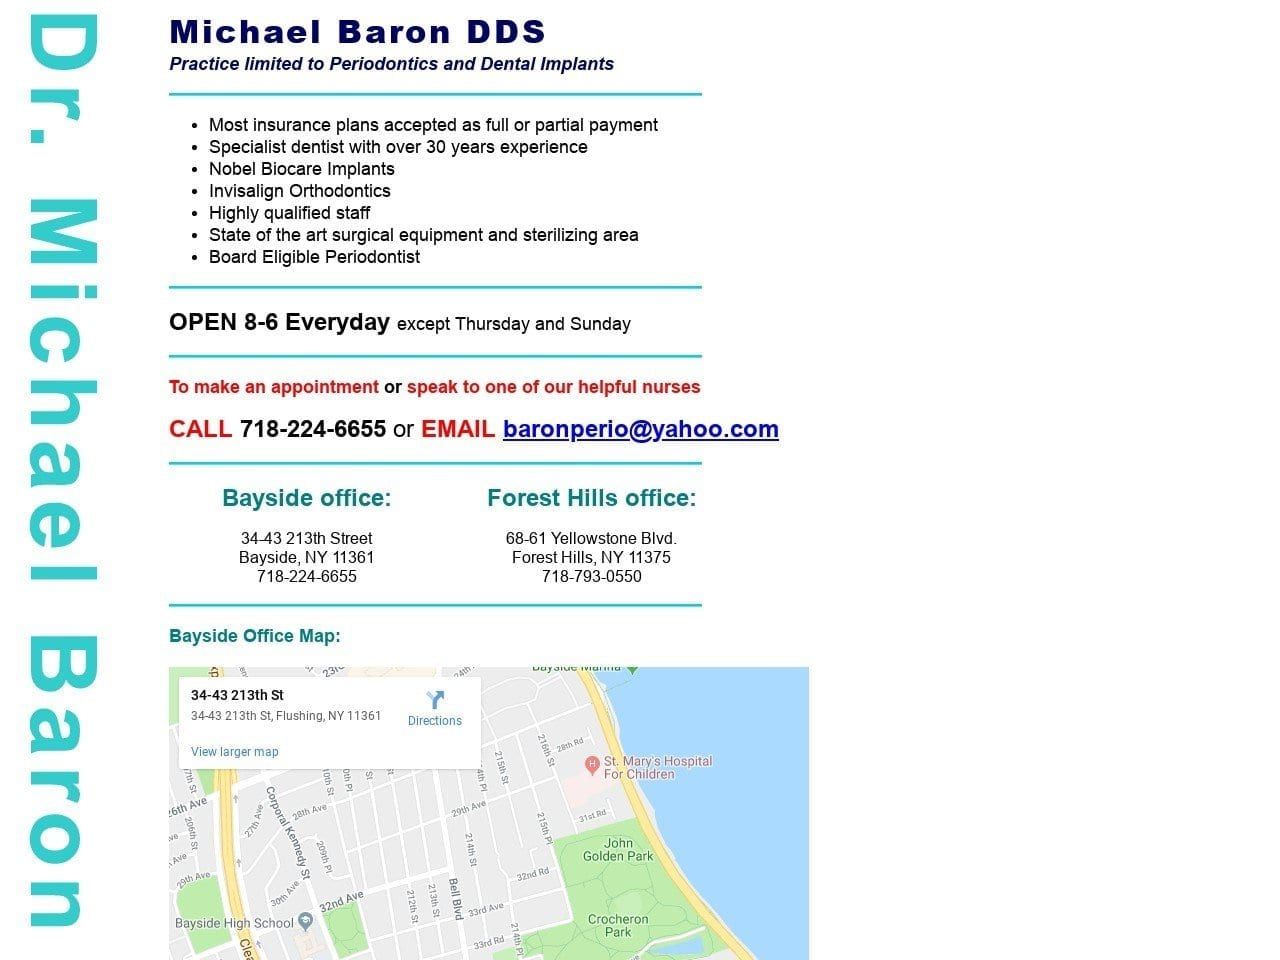 Michael Baron DDS Website Screenshot from michaelbarondds.com